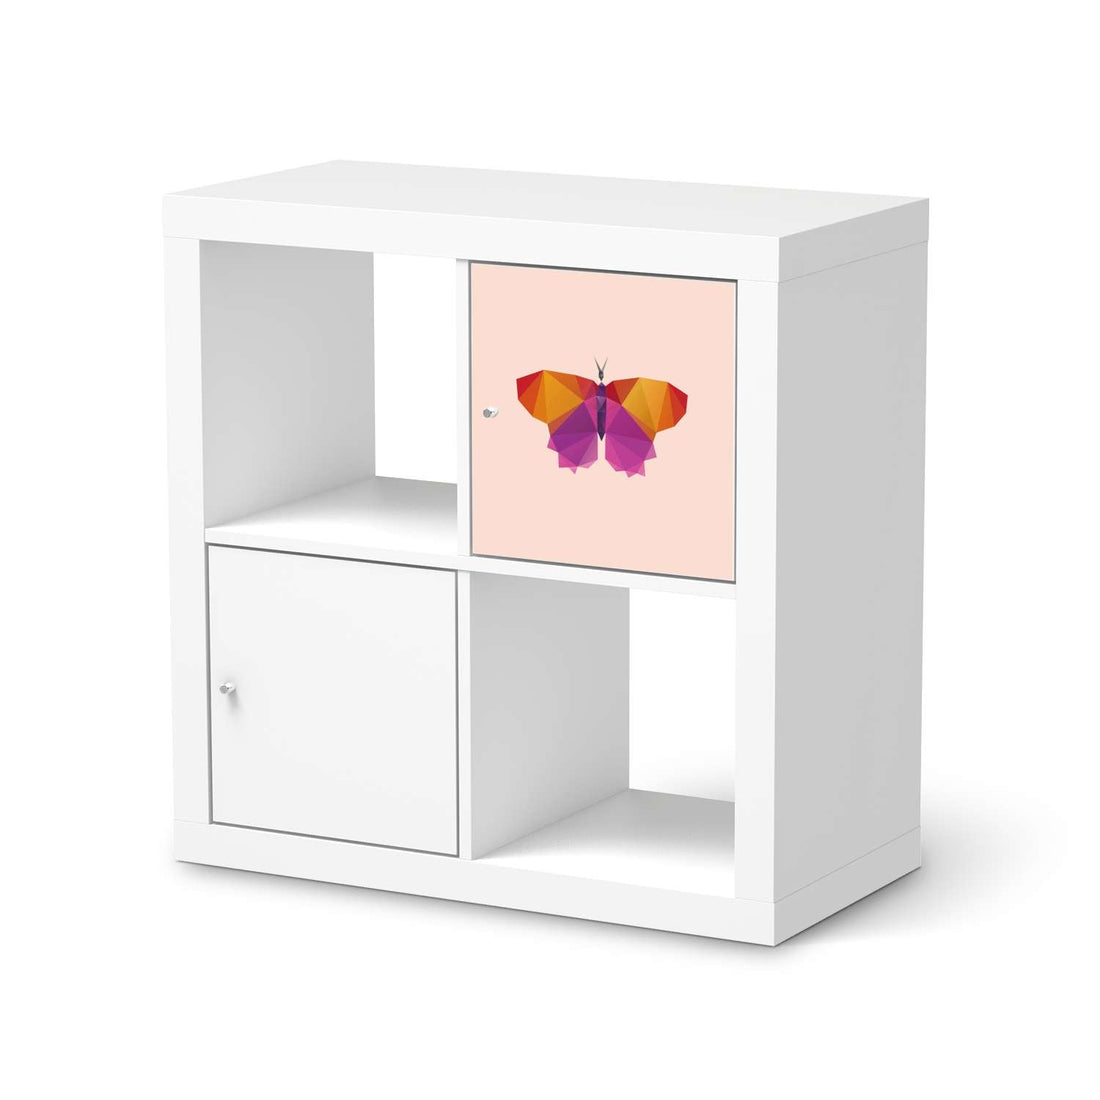 Selbstklebende Folie Origami Butterfly - IKEA Kallax Regal 1 Türe  - weiss